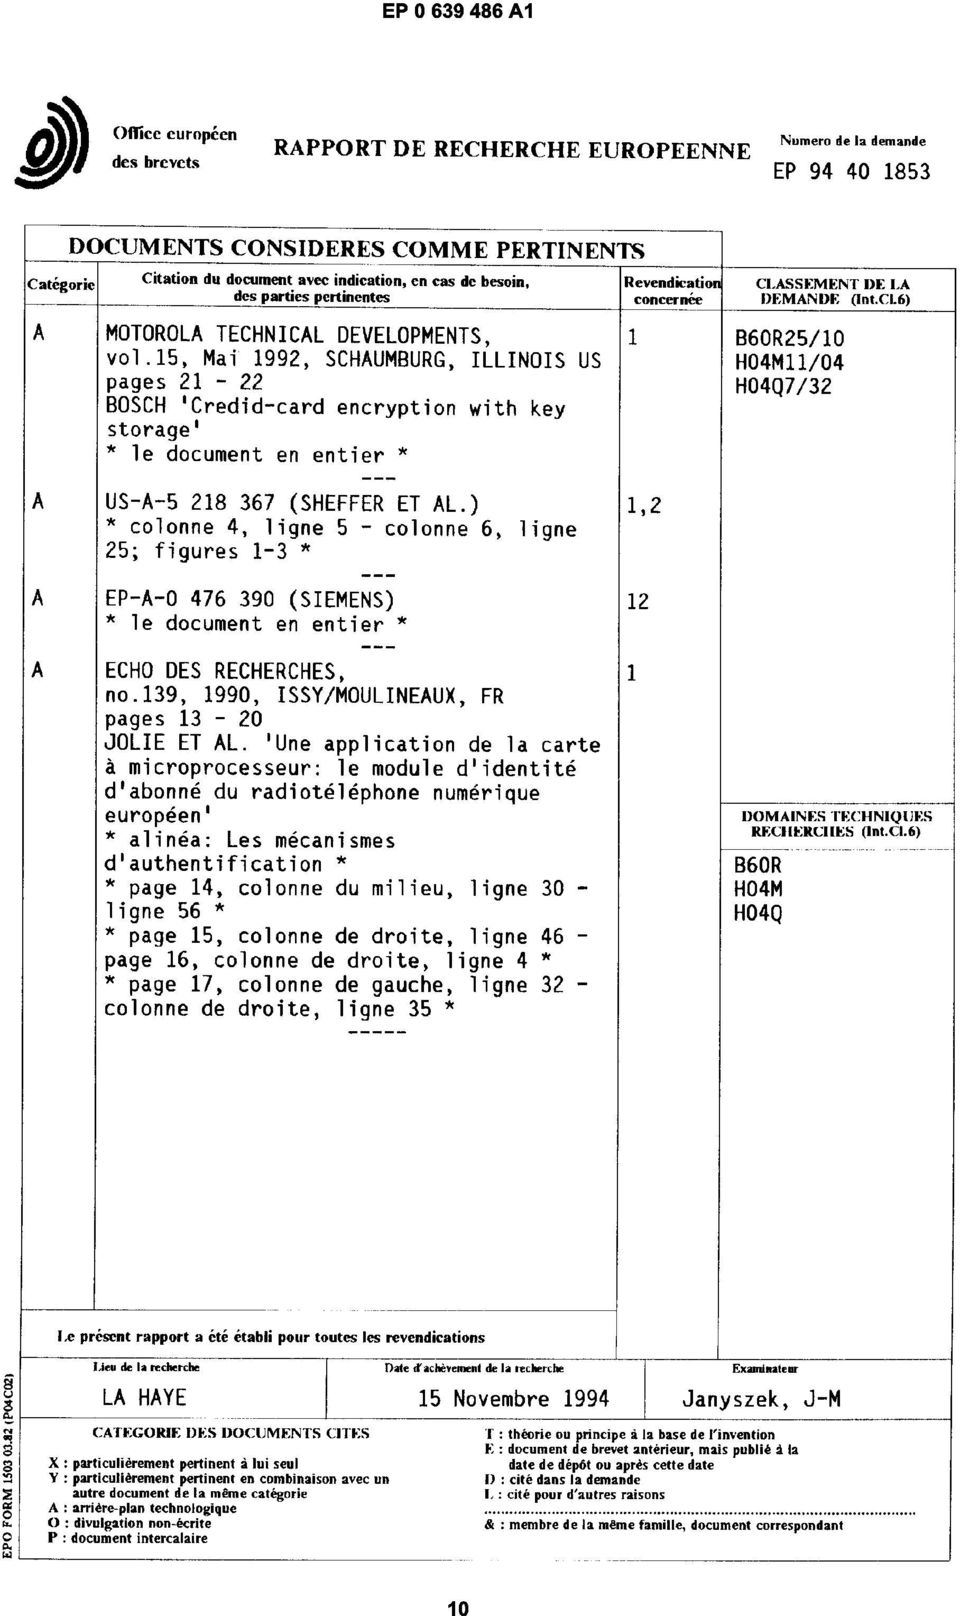 15, Mai 1992, SCHAUMBURG, ILLINOIS US pages 21-22 BOSCH 'Oedid-card encryption with key storage' * le document en entier * CLASSEMENT DE LA DEMANDE (lnt.ci.